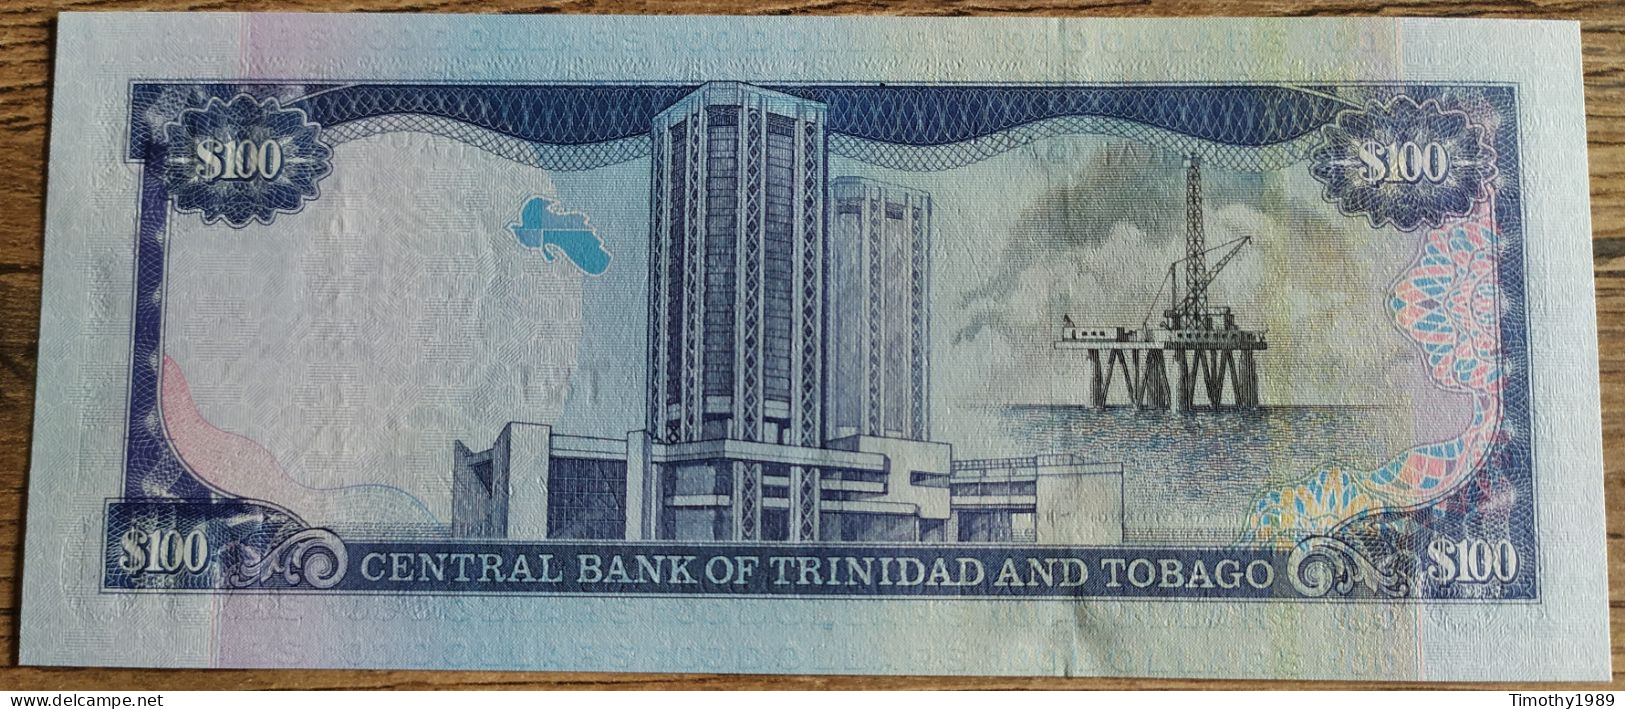 P# 45 - 100 Dollars Trinidad And Tobago 2002 - UNC!! - Trinidad Y Tobago